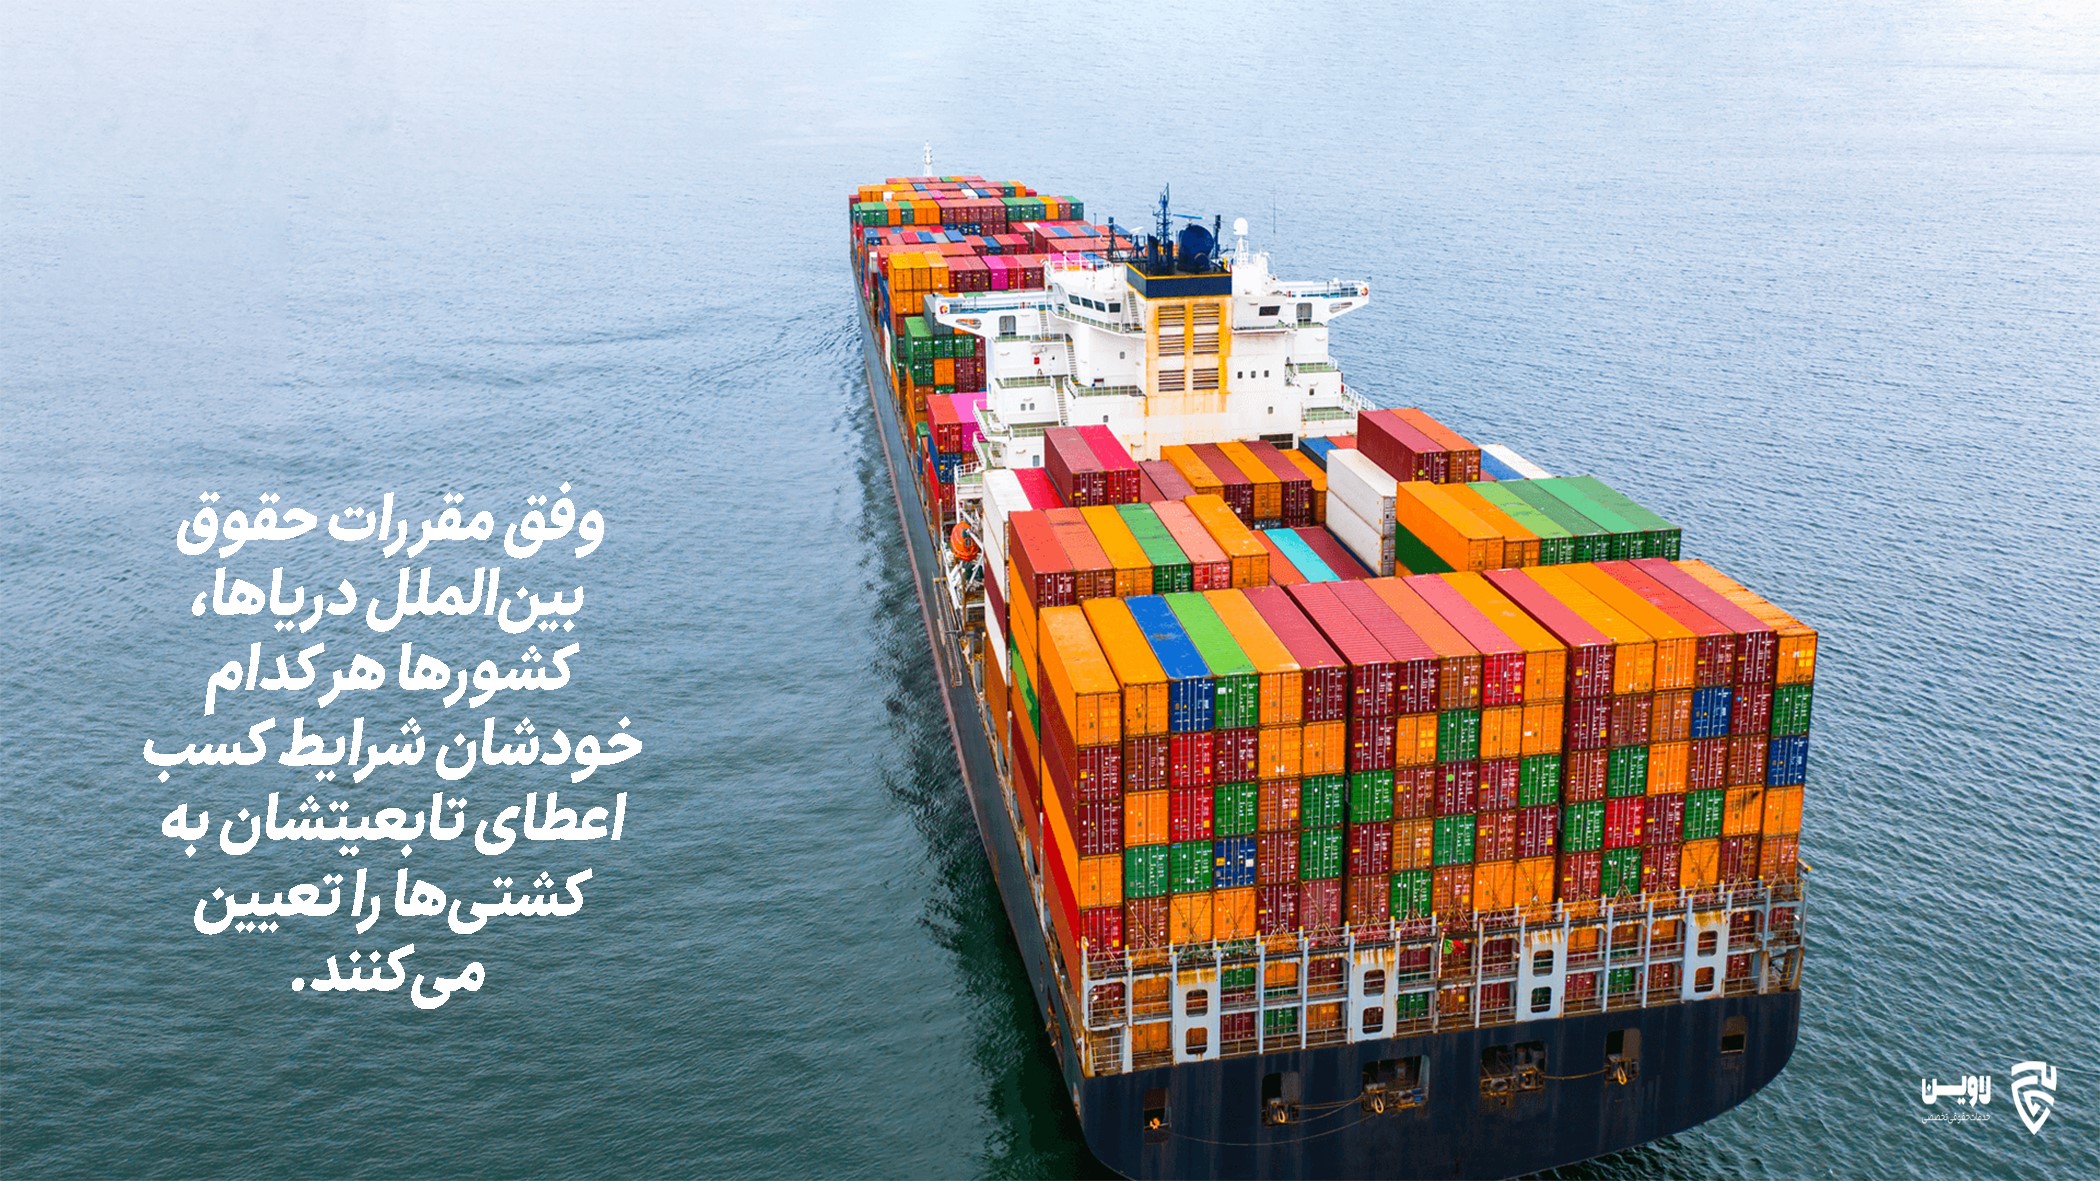 کسب تابعیت ایرانی برای کشتی- اپلیکیشن حقوقی لاوین